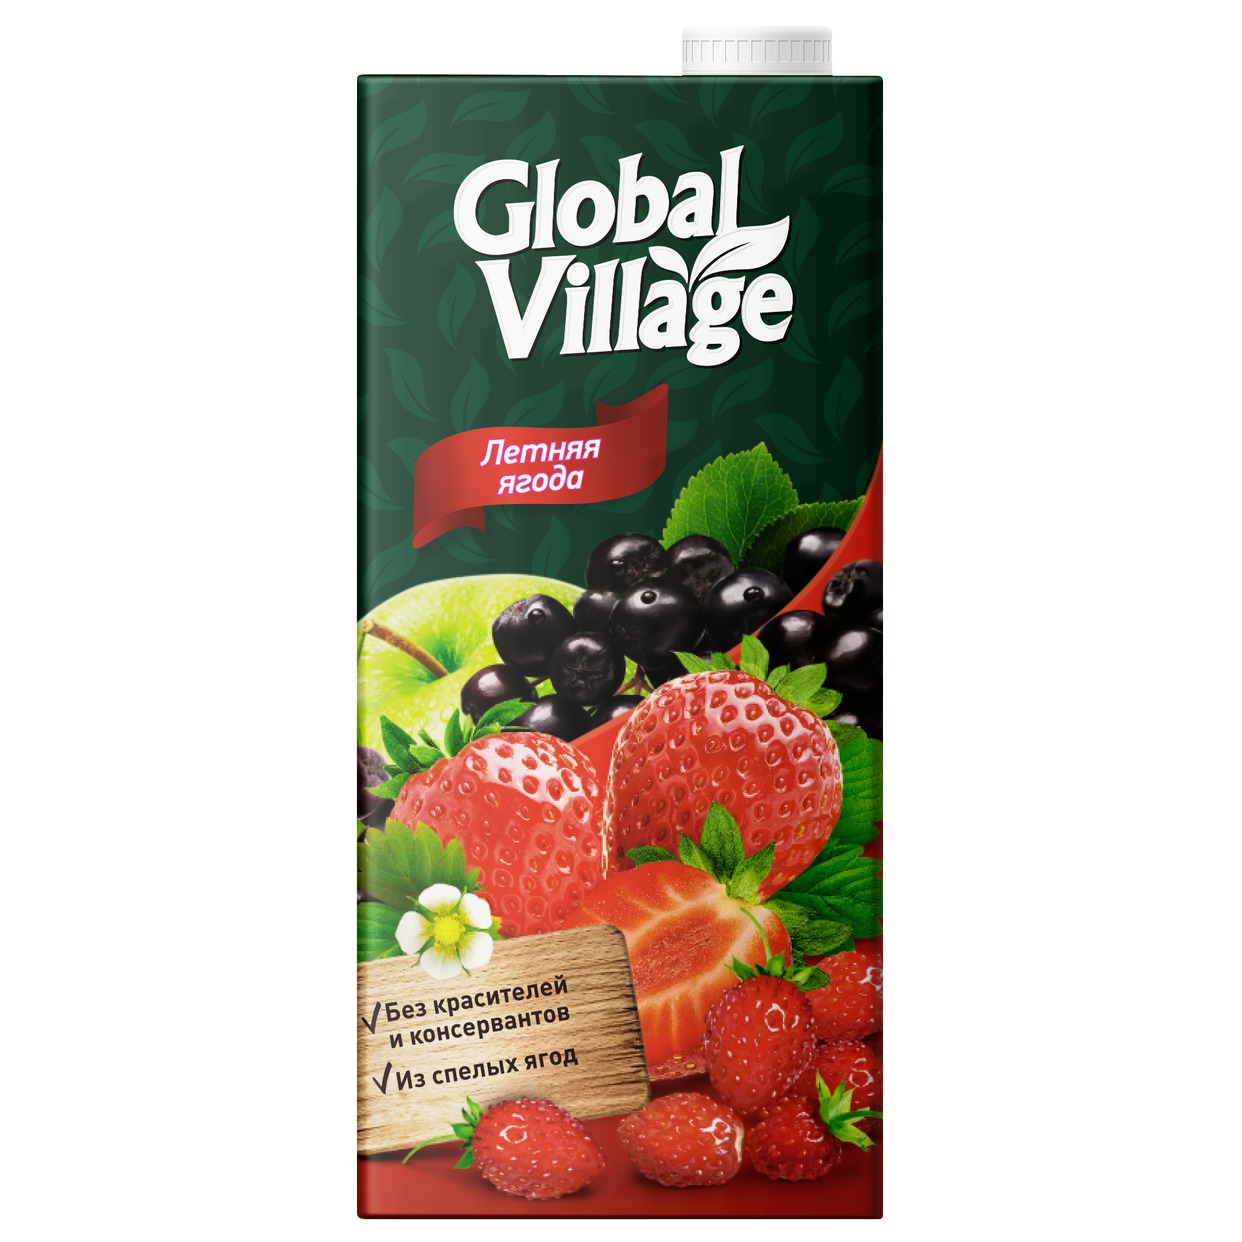 GLOBAL VILLAGE Сокосодержащий напиток из яблок, черноплодной рябины, клубники и земляники, 0,95л